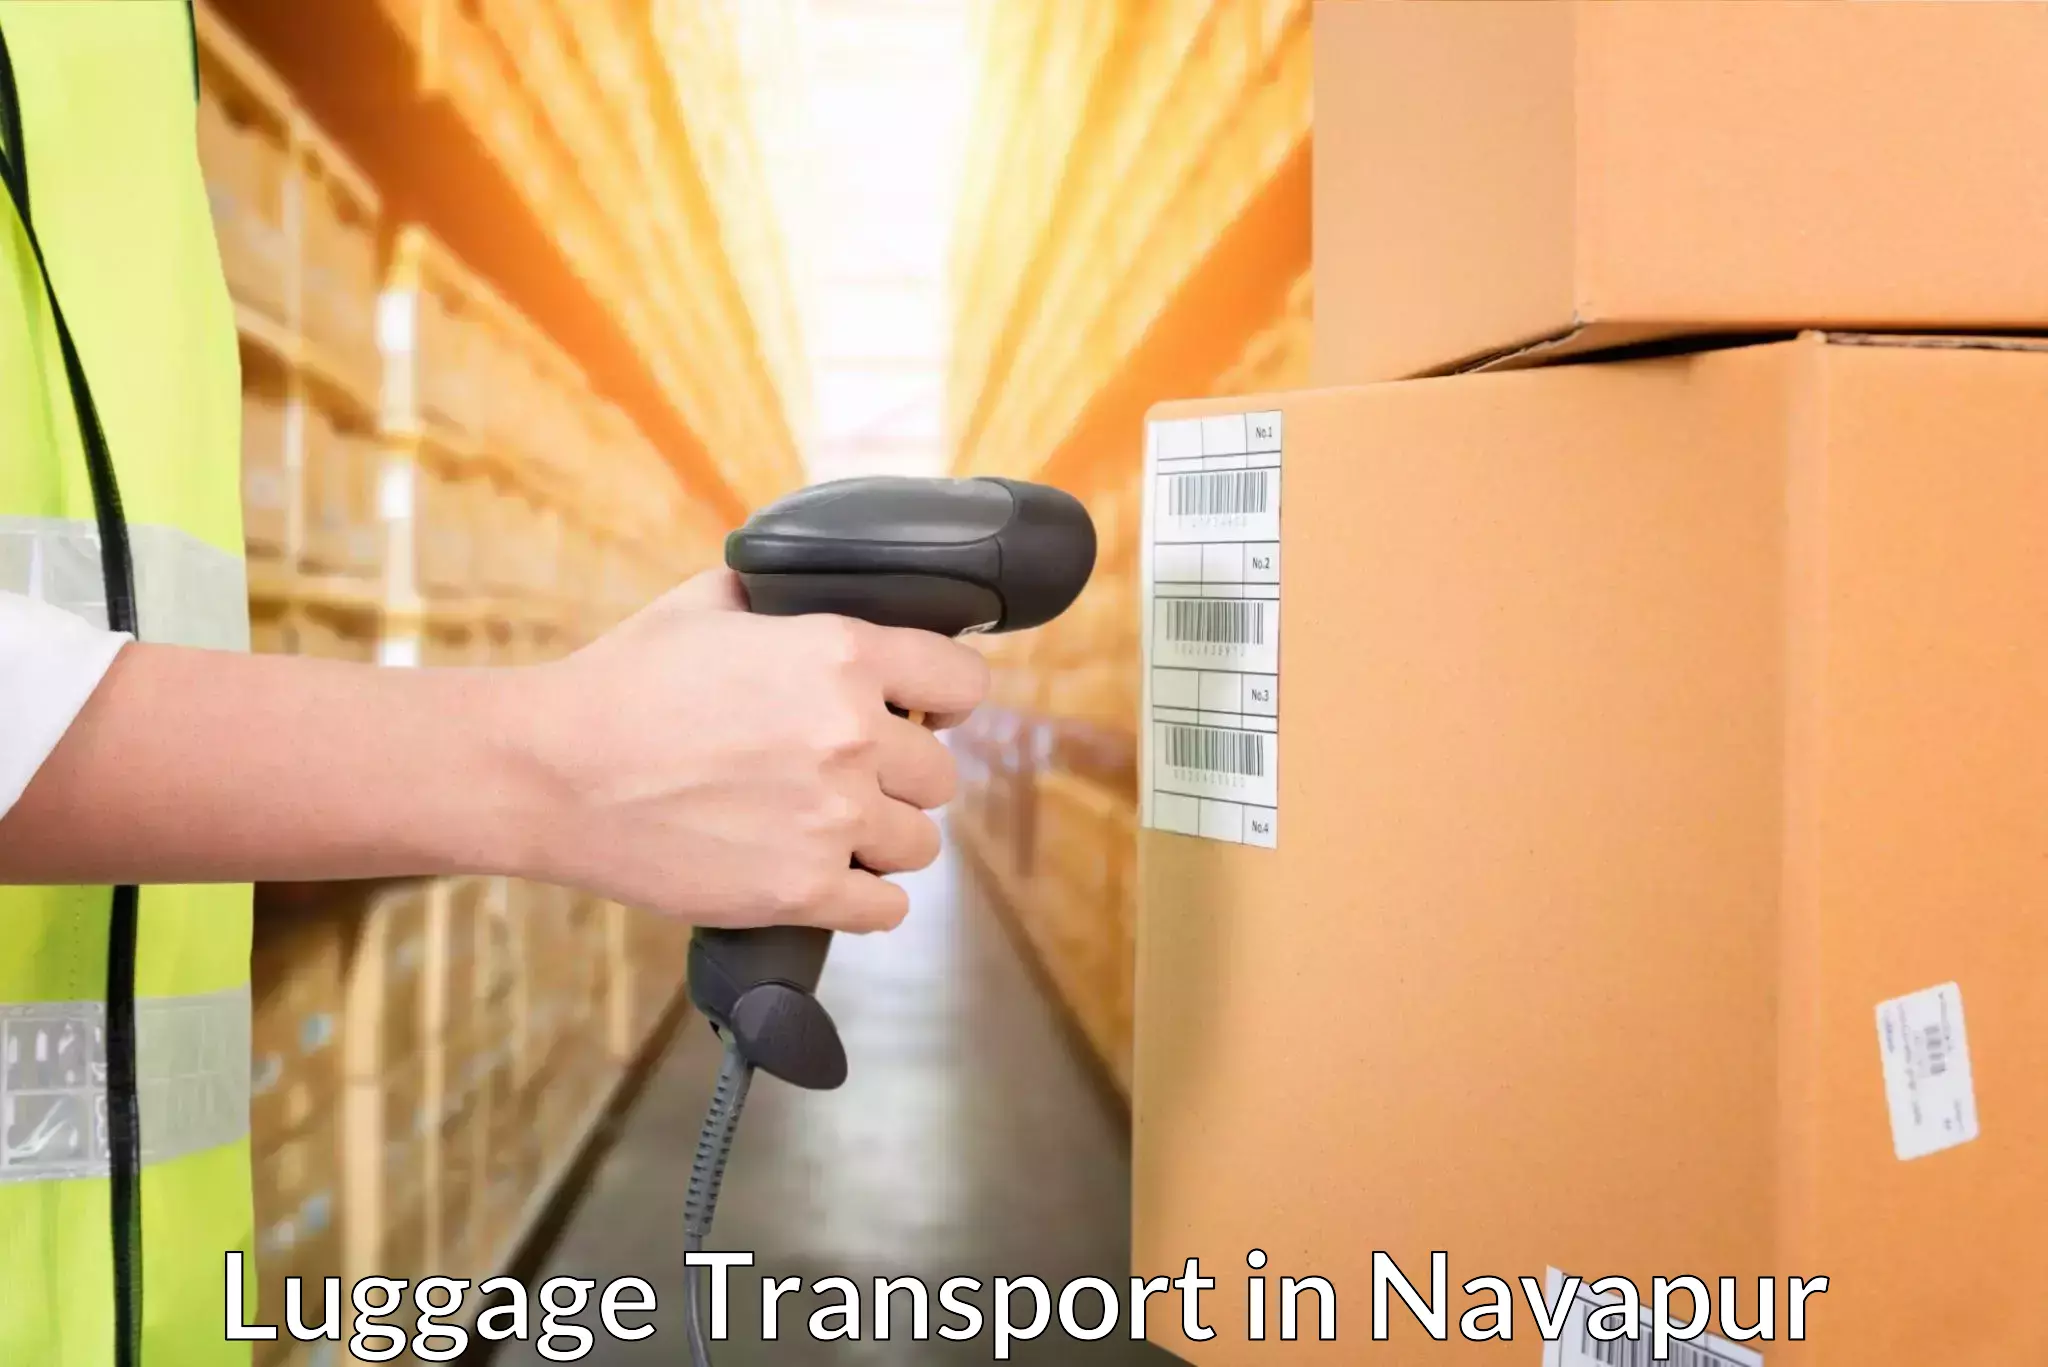 Digital baggage courier in Navapur